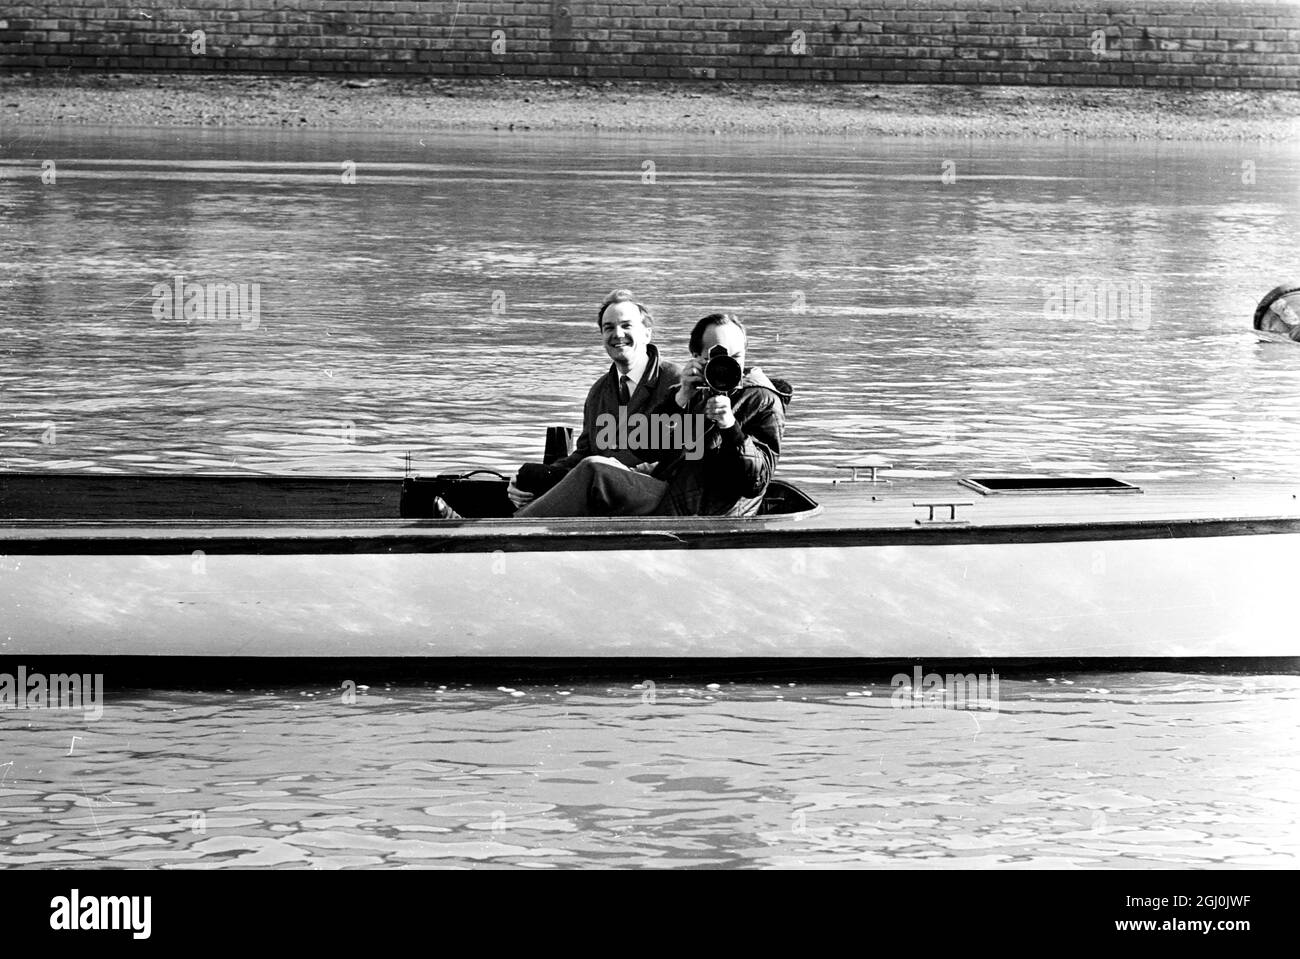 London: Heute Morgen, am 13. März, auf dem Thames Tideway sind zum ersten Mal in diesem Jahr die Dark Blues of Oxford. Die Crew begleitete Cambridge auf dem Tideway in der letzten Vorbereitung für das jährliche Varsity Boat Race, das am 25. März stattfindet. Cambridge kam am letzten Donnerstag an. Zwei Amerikaner von der Yale University sind in Oxford's Bootsrennen-Crew enthalten. Von Bow: J.R. Bockstoce von Yale und St. Edmund Hall; M.S. Kennard: CF.H. Freeman, J.E. Jensen von Yale und New College; J.K. Mullard, C.I. Blackwall, D. Topolski, P.G. Saltmarsh, Stroke und Peter Miller, cox. 13. März 1967 Stockfoto